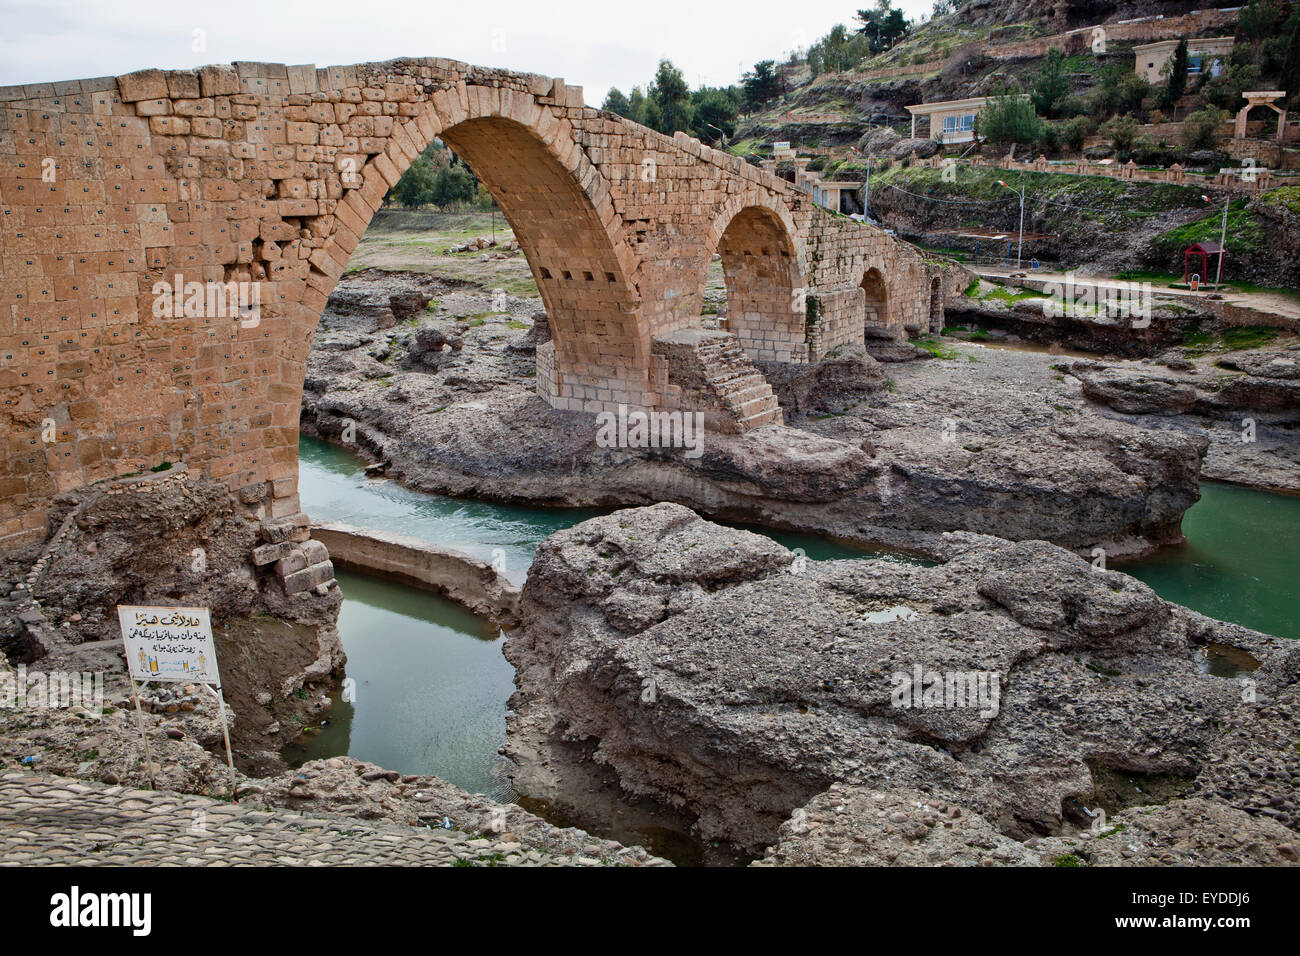 Details Of Dalal Bridge In Zakho, Iraqi Kurdistan, Iraq Stock Photo